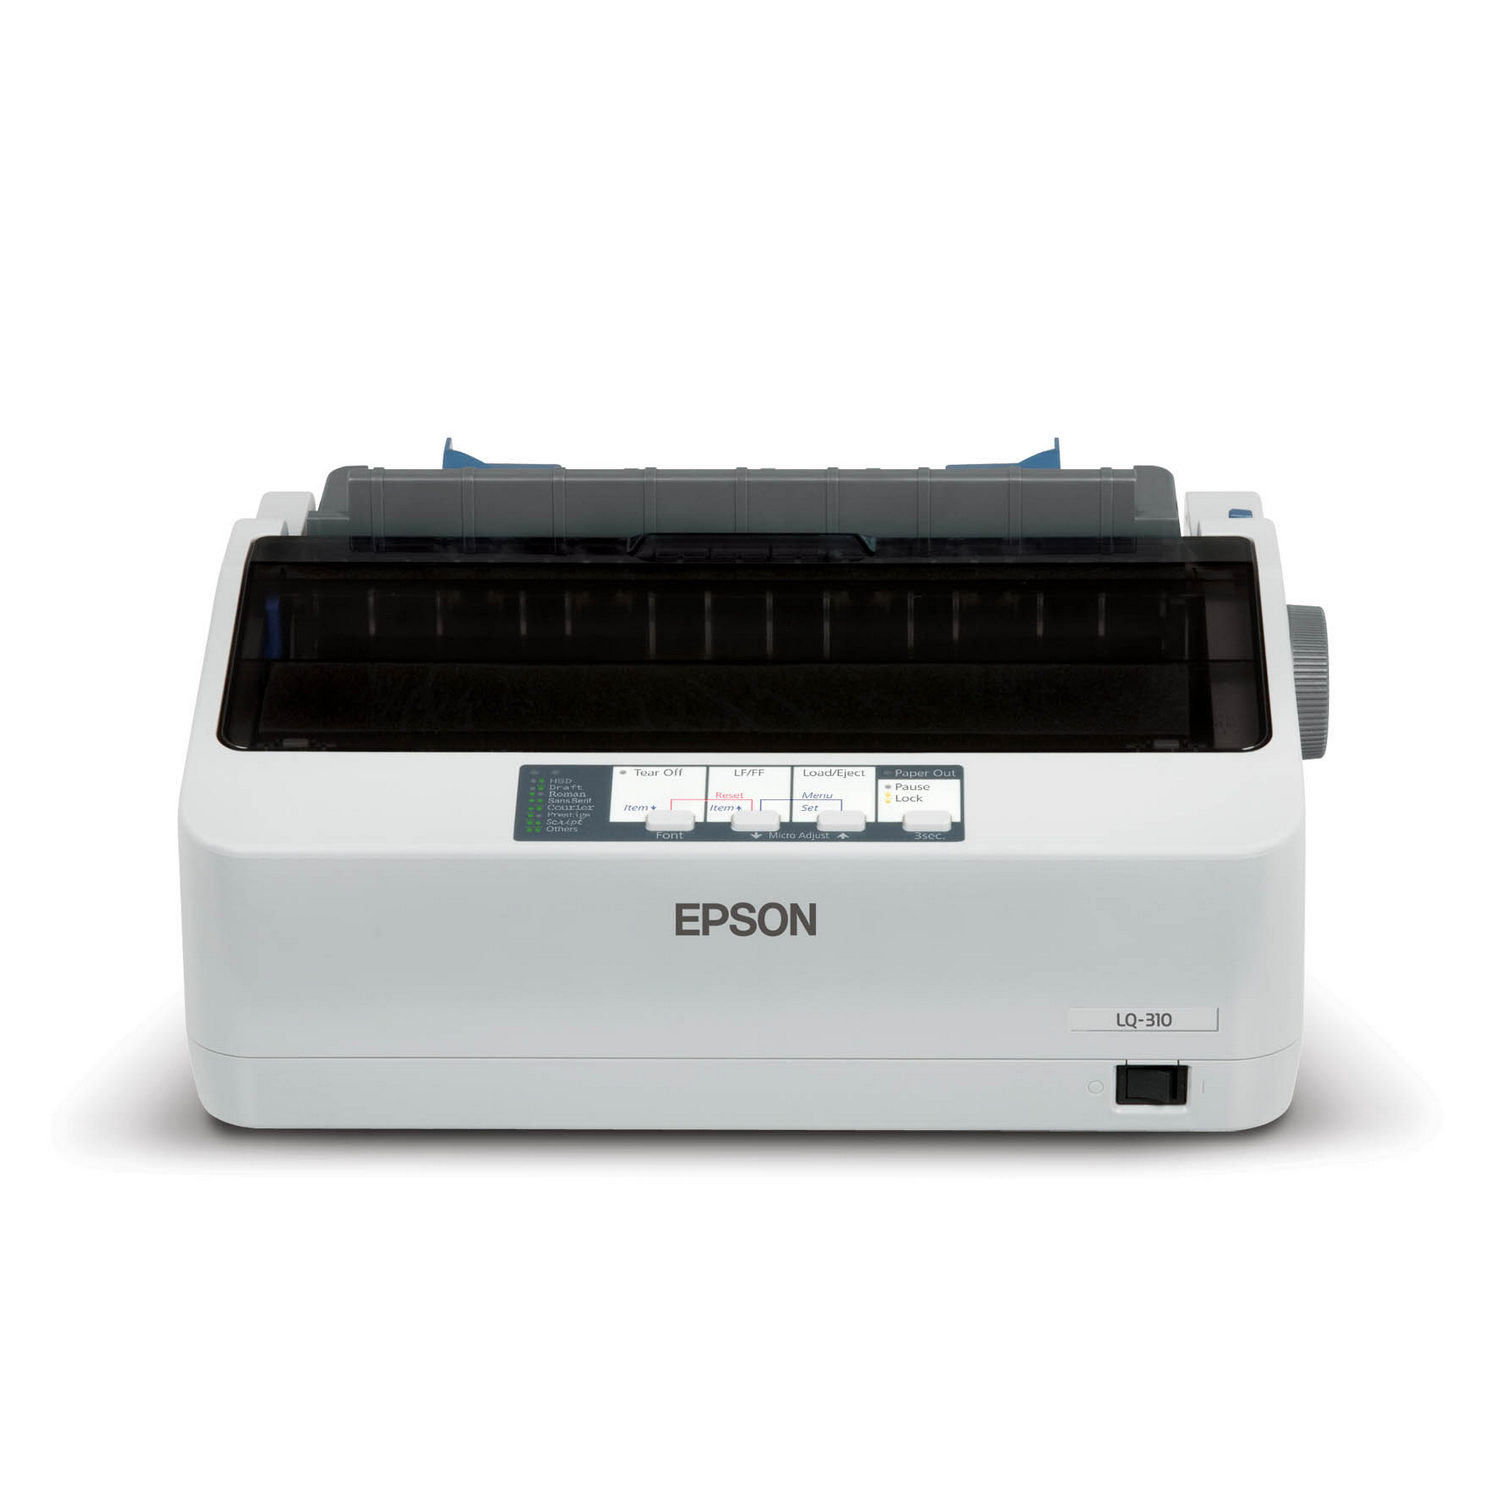 EPSON Dot Matrix Printer LQ-310 